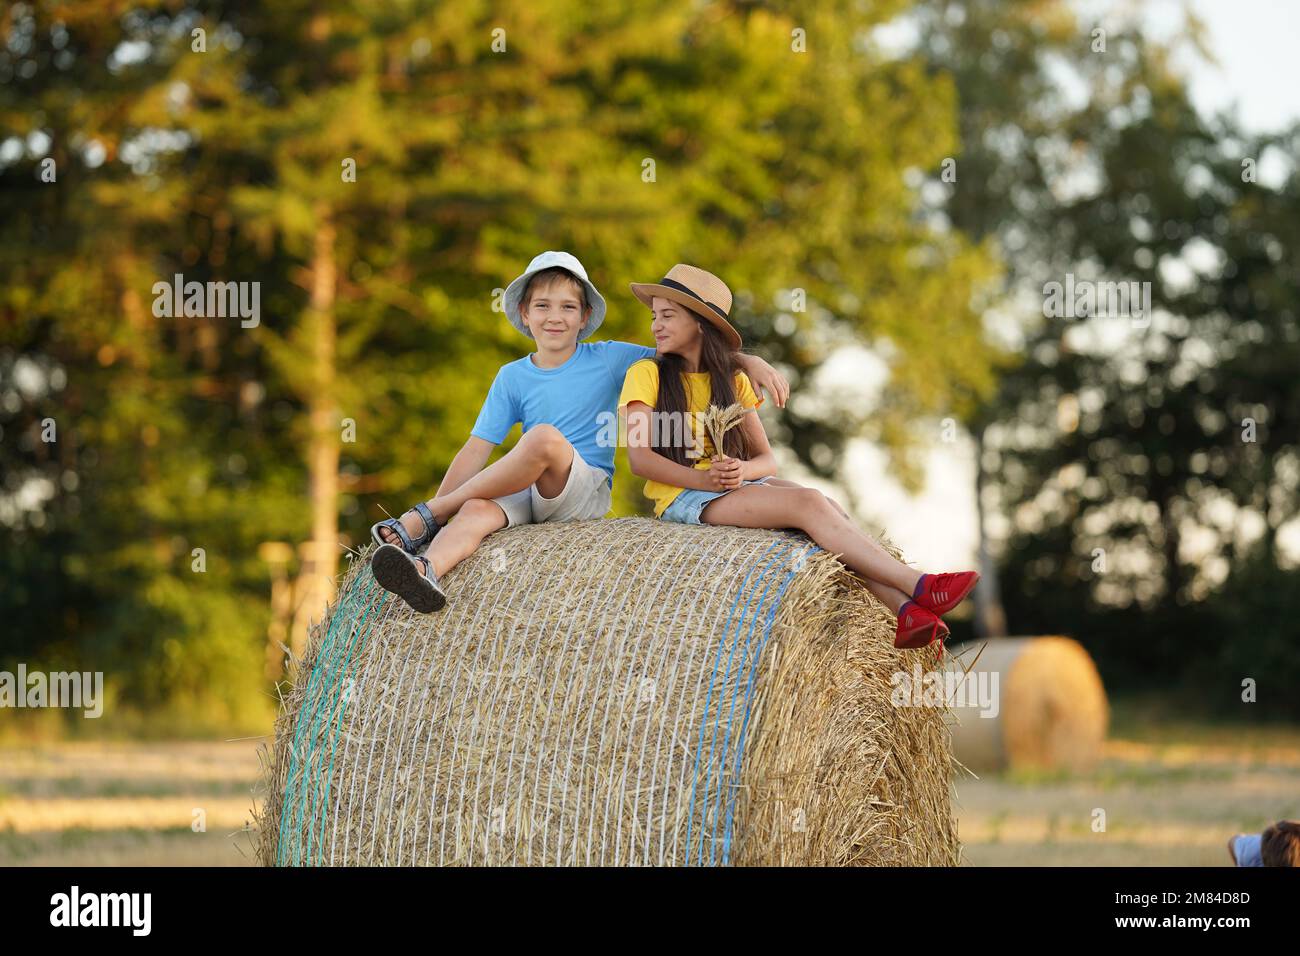 Ein Junge und ein Mädchen im Alter von 10-15 Jahren sitzen auf einem Heuhaufen Stockfoto